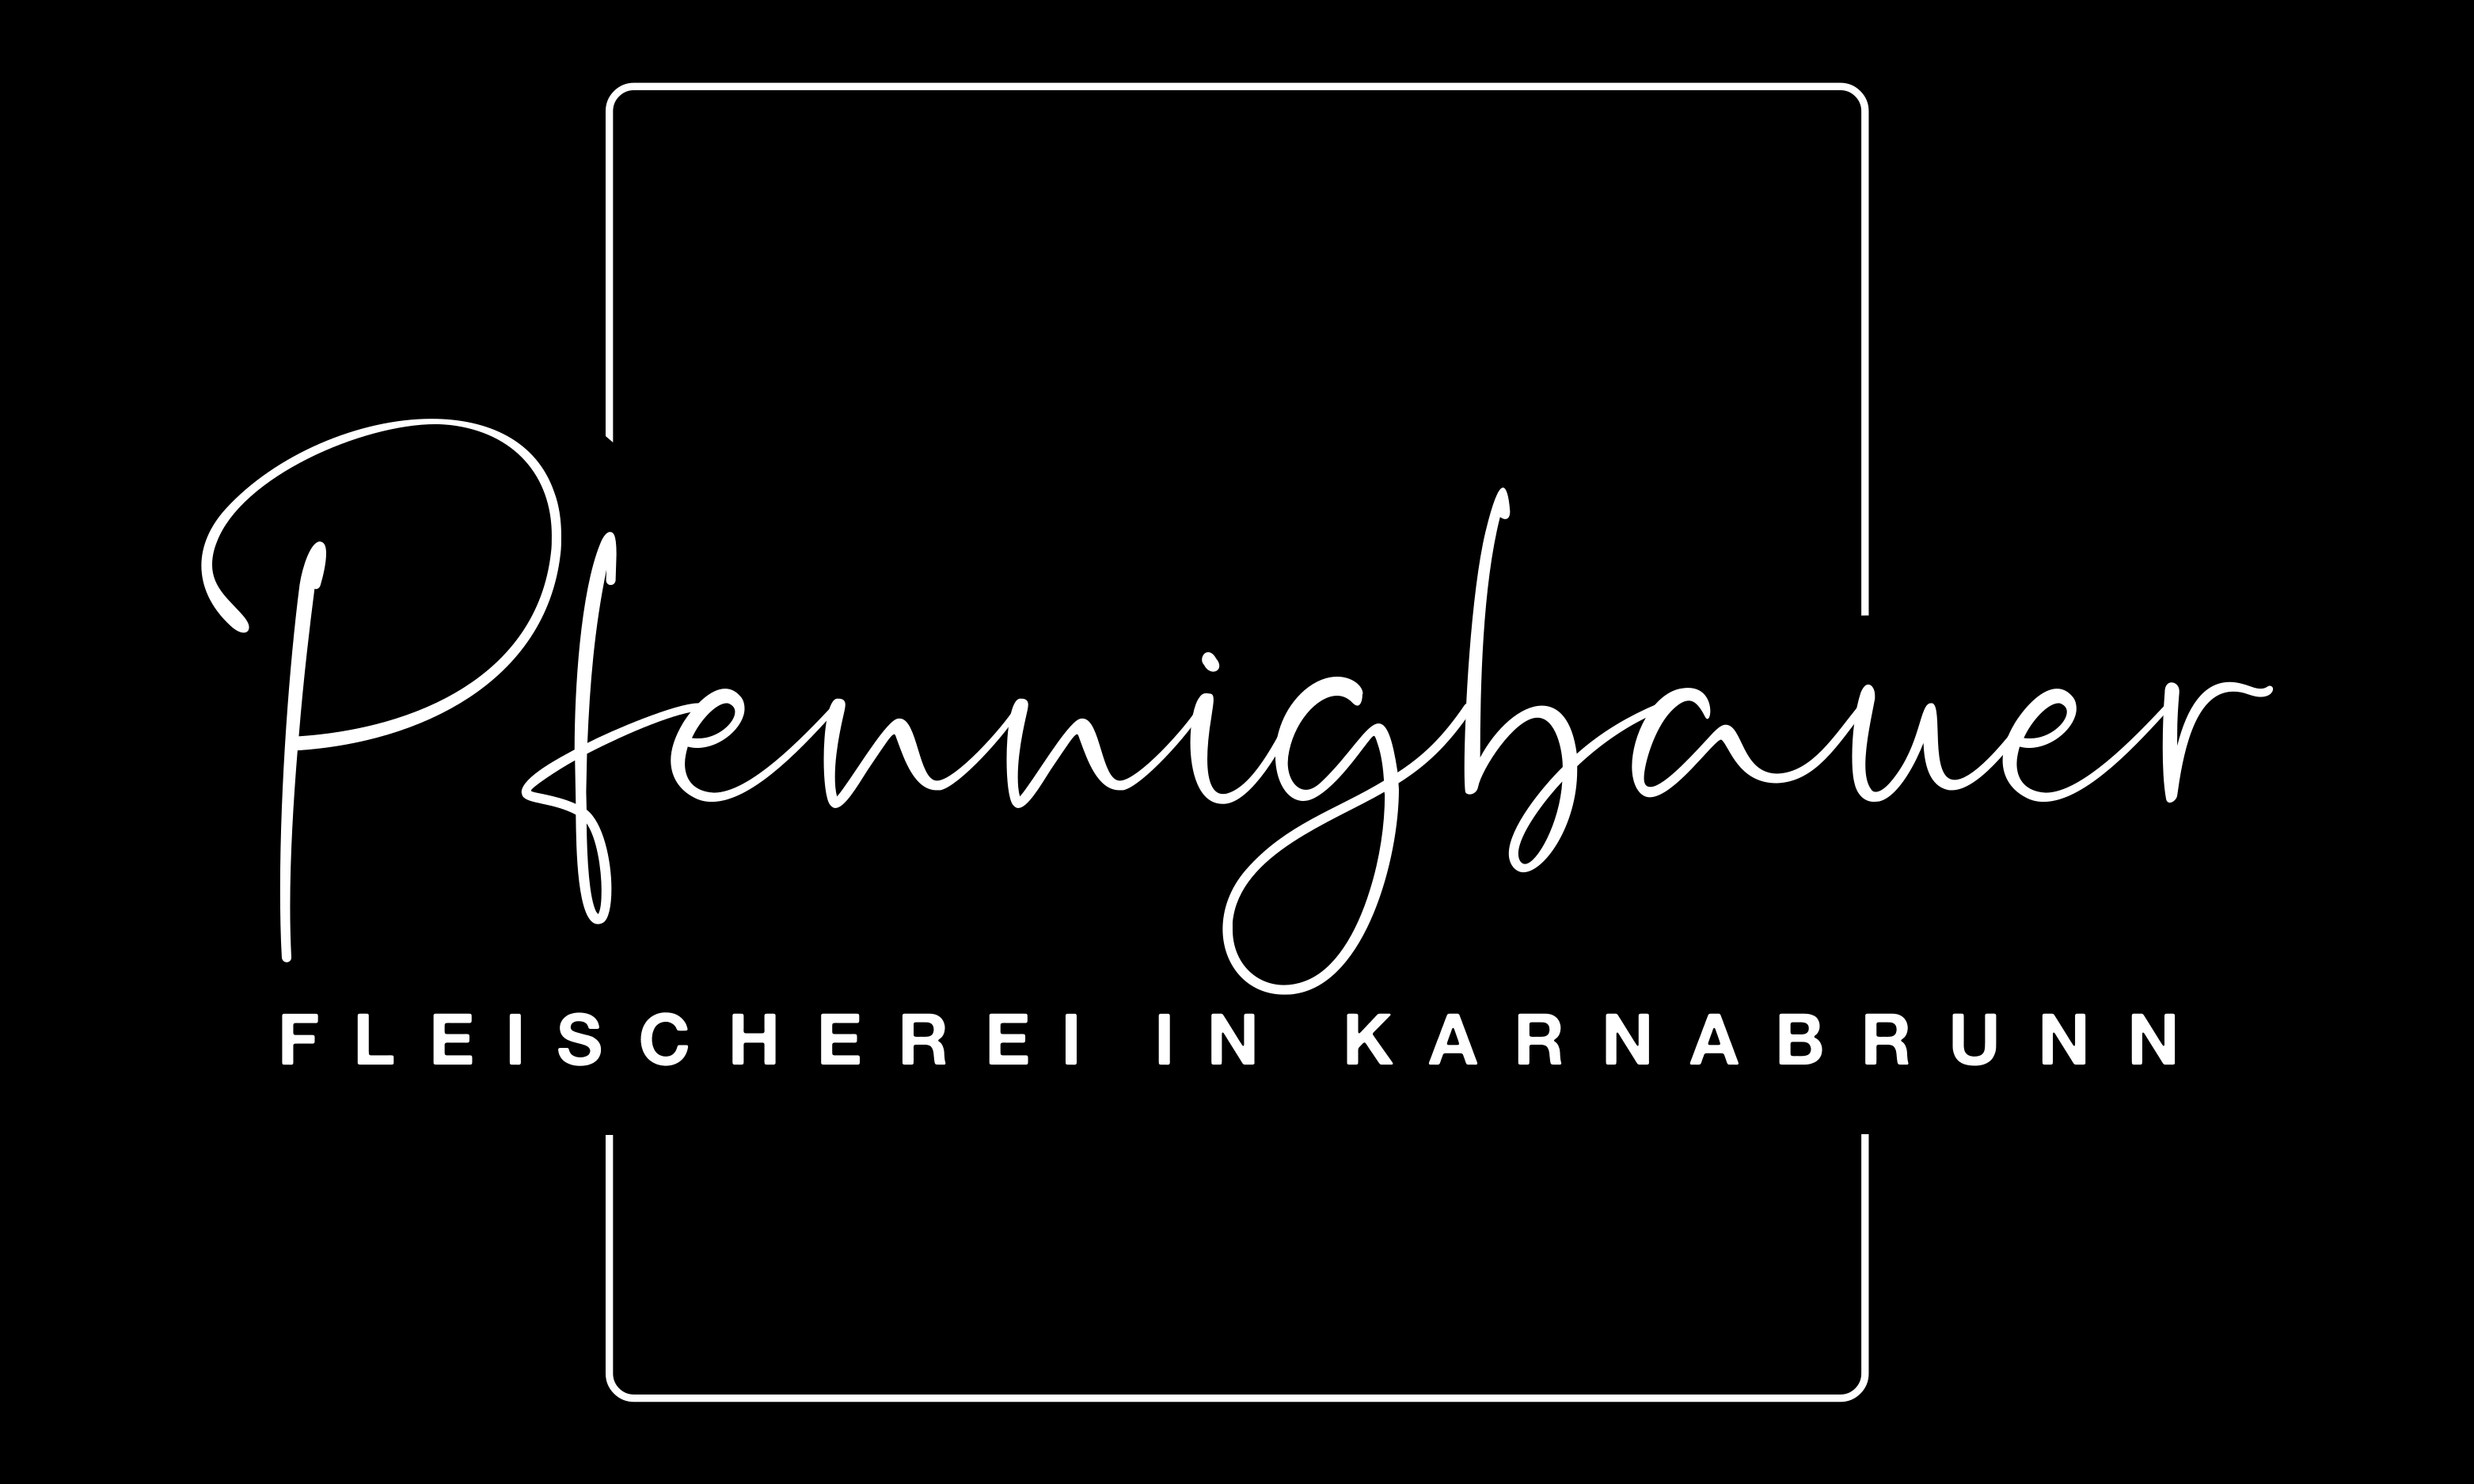 (c) Pfennigbauer-karnabrunn.at